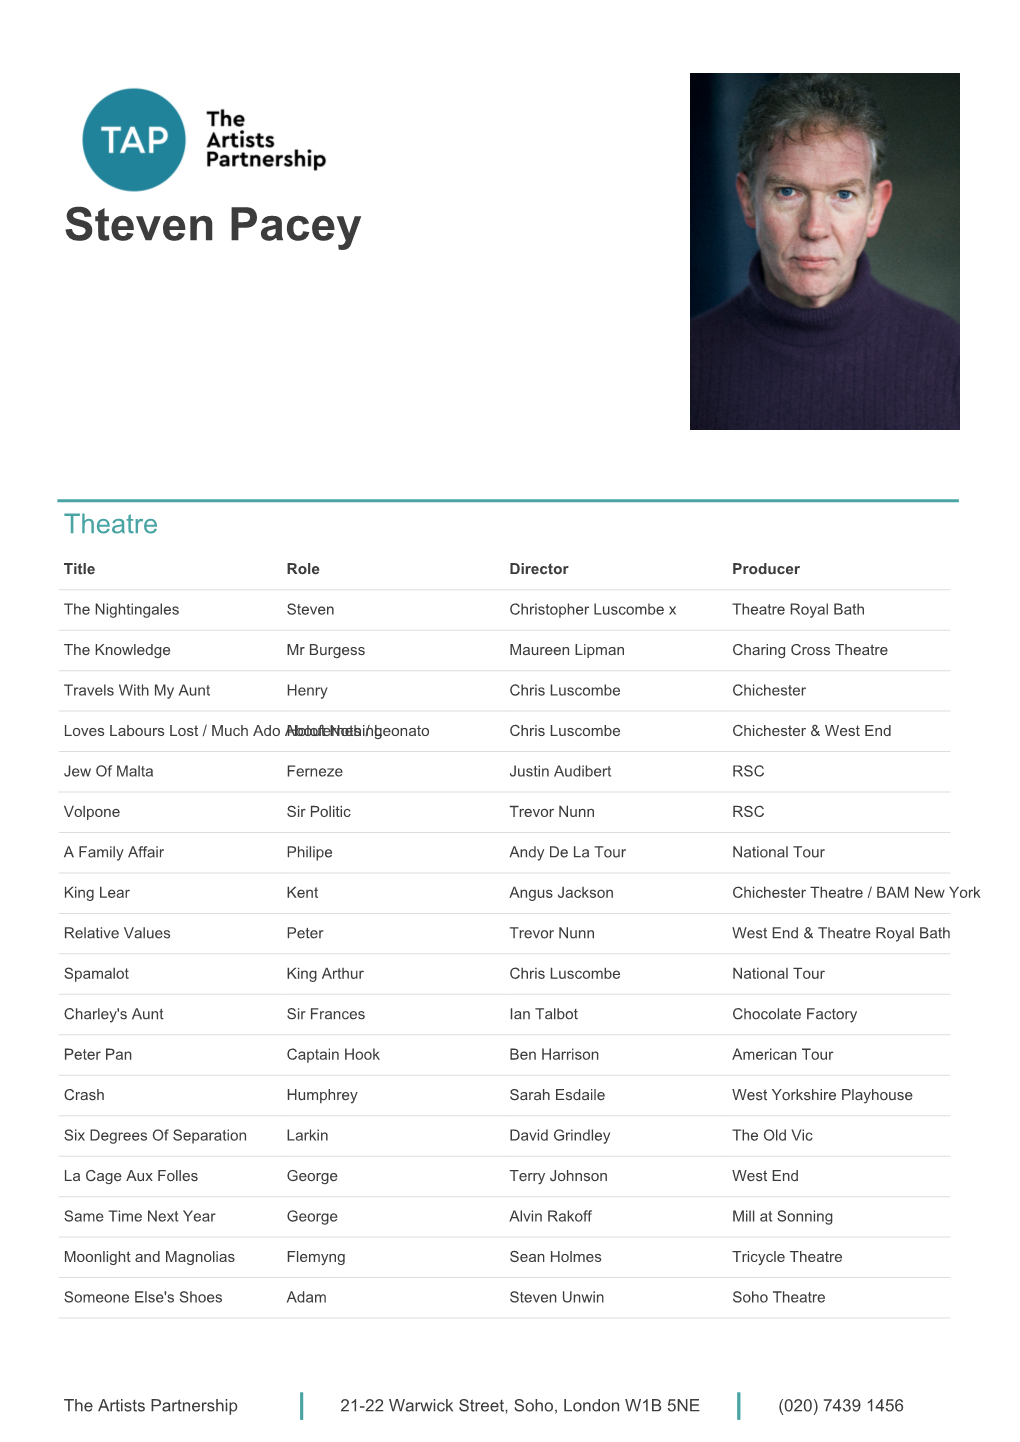 Steven Pacey